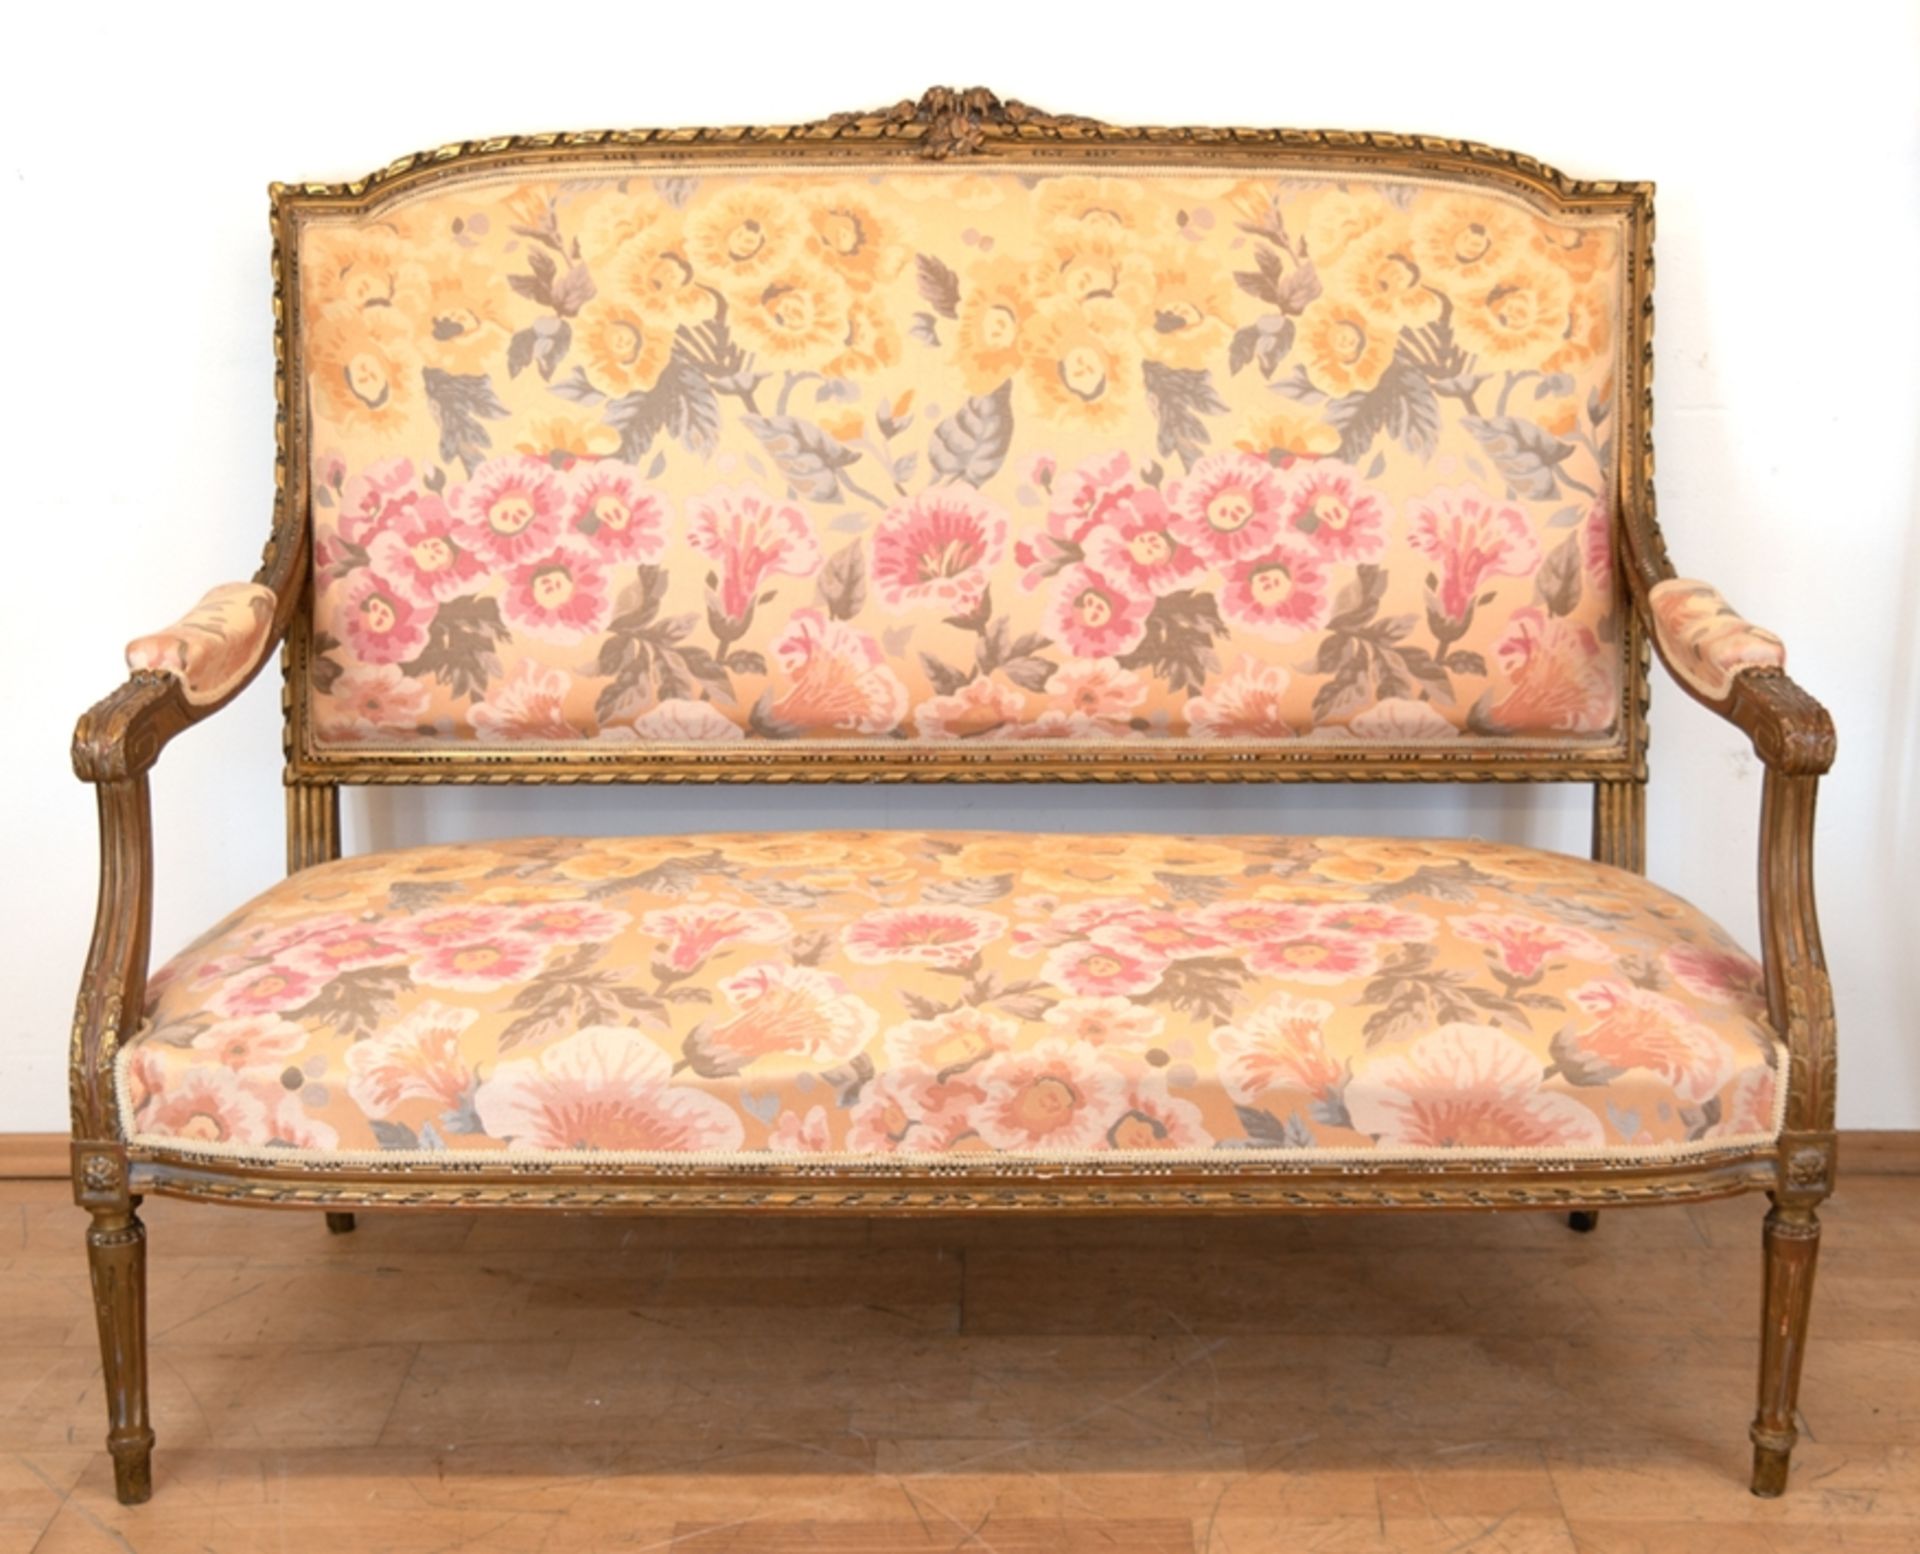 Sofa, im Louis-Seize-Stil, Gold gefaßt, geblümter Bezugsstoff, hinteres Bein repariert, Gebrauchspu